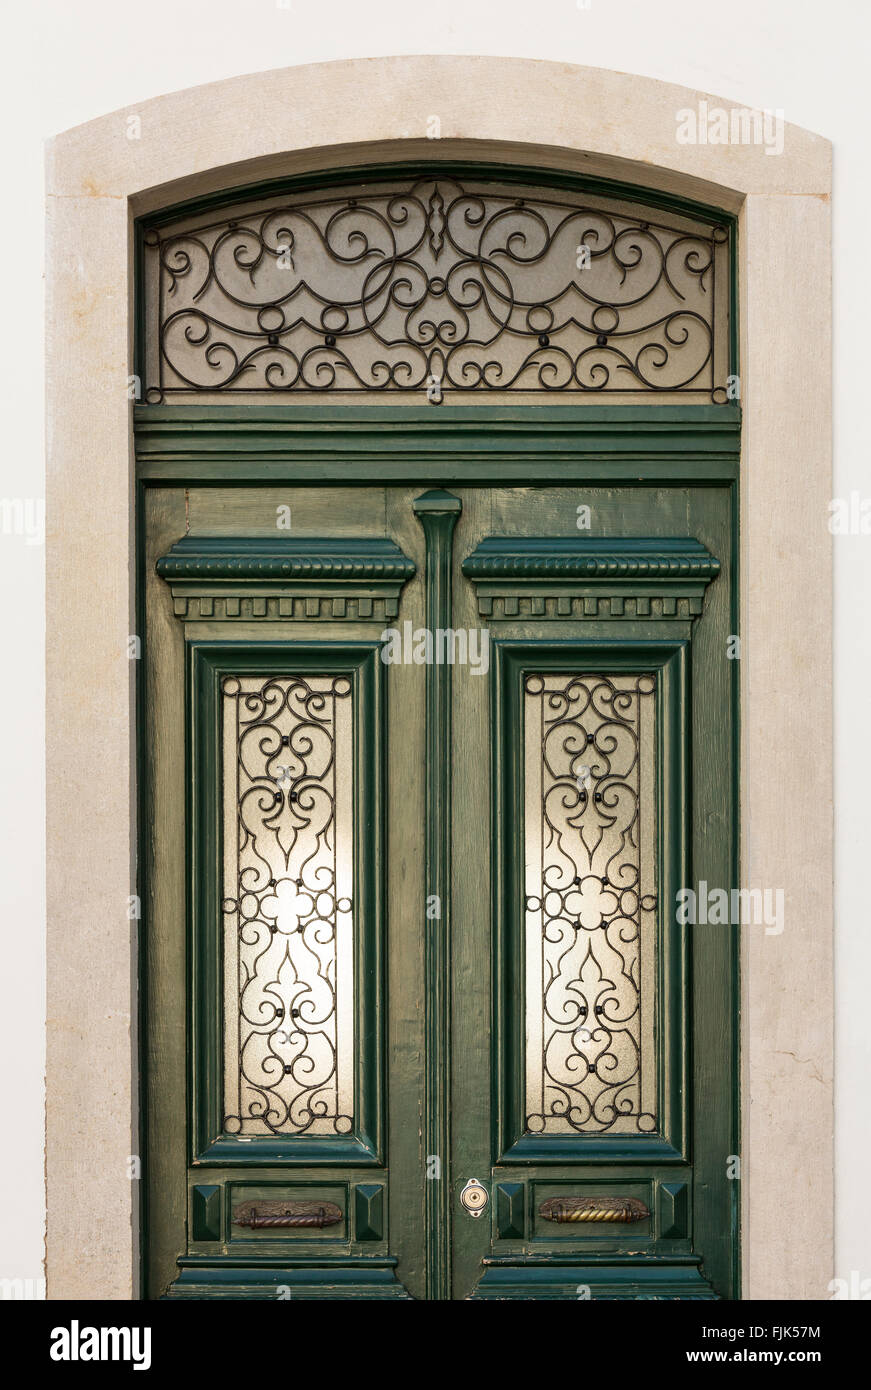 Portes peintes avec des détails en fer forgé dans le style traditionnel de la région de l'Alentejo, Evora, Portugal Banque D'Images